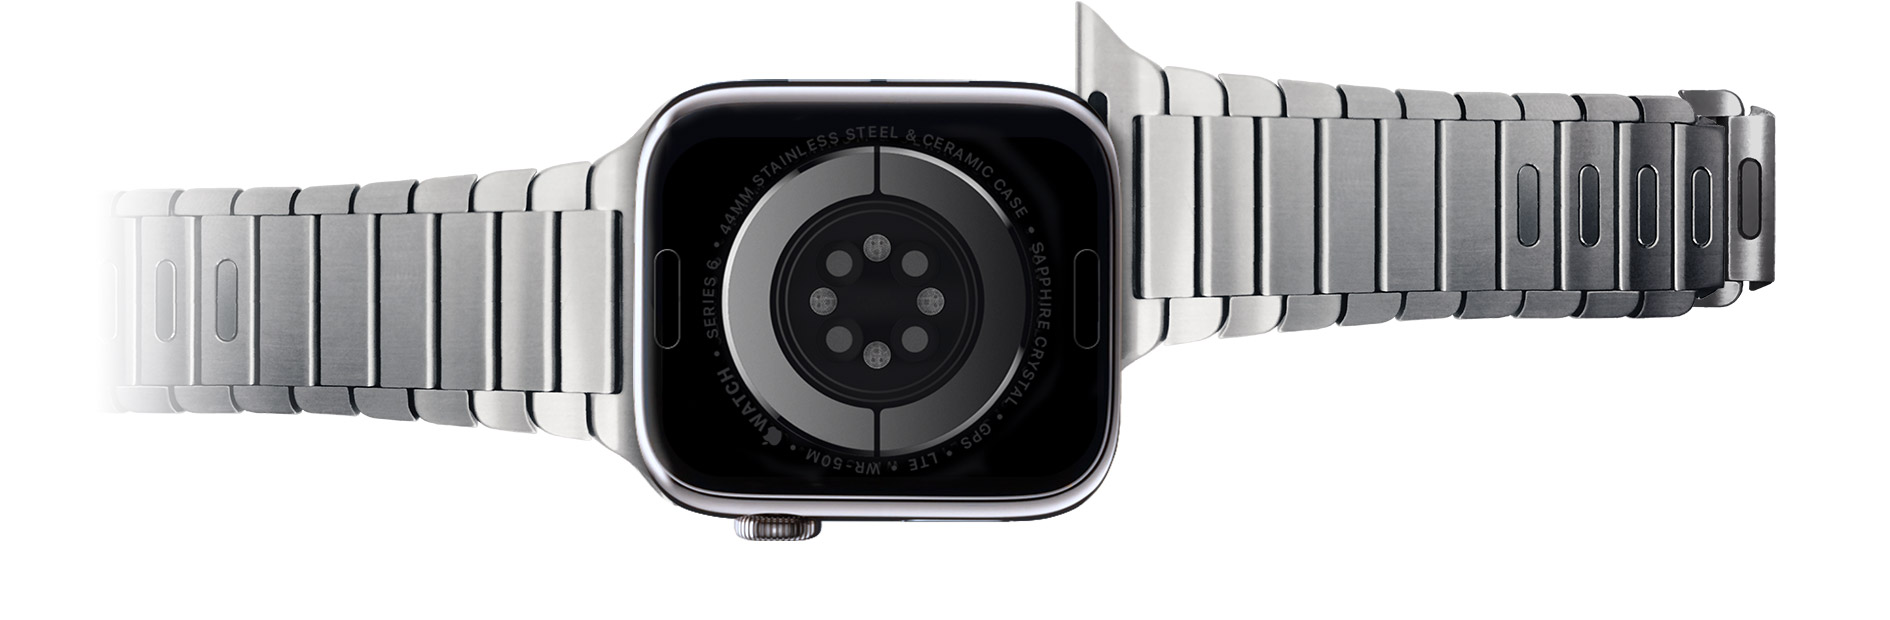 Aus dem Apple Watch-Gehäuse herausgleitendes Armband